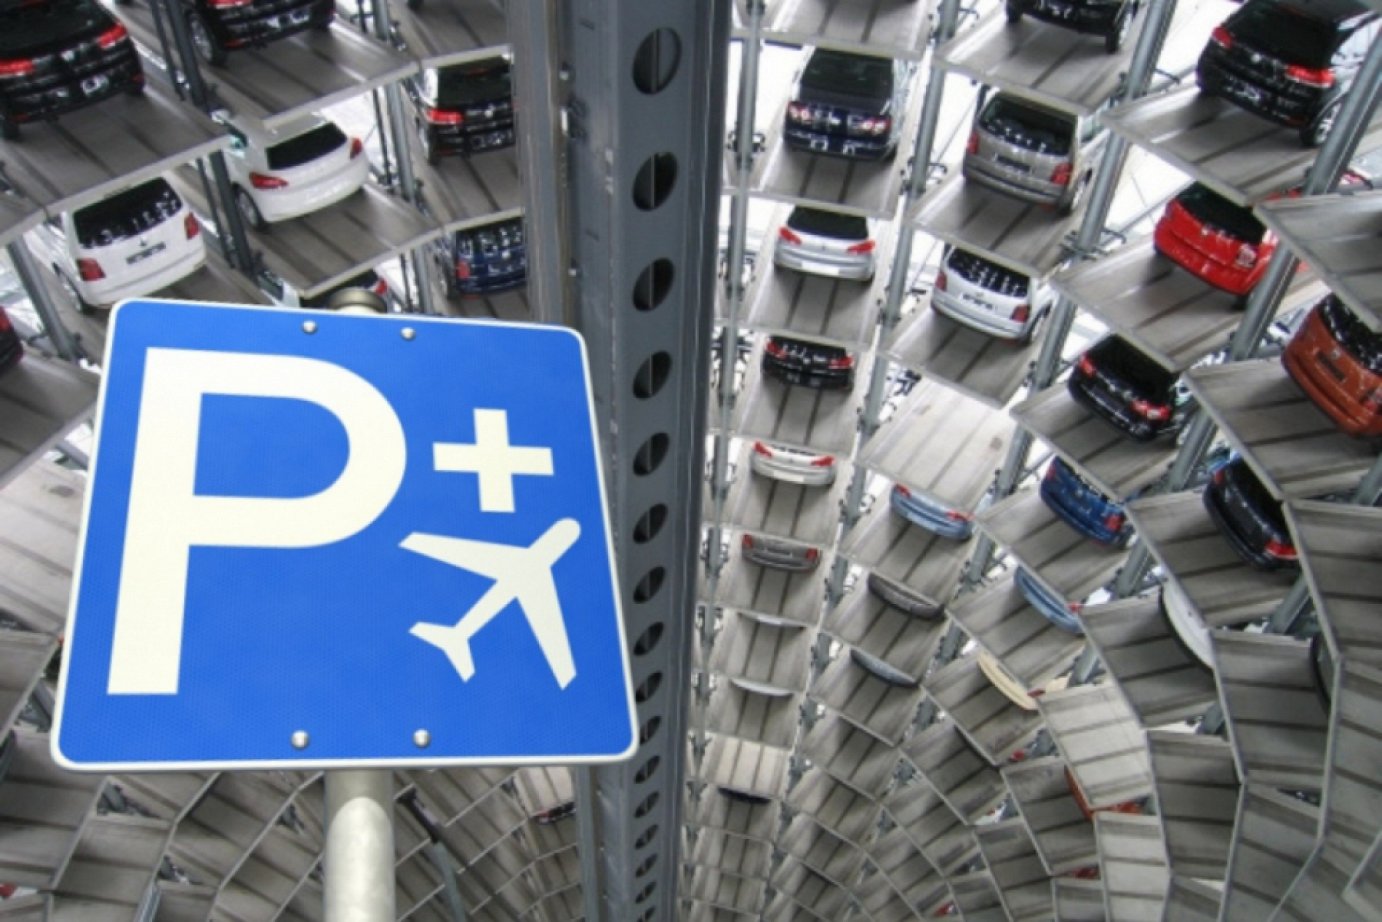 Parking gratuit aux aéroports